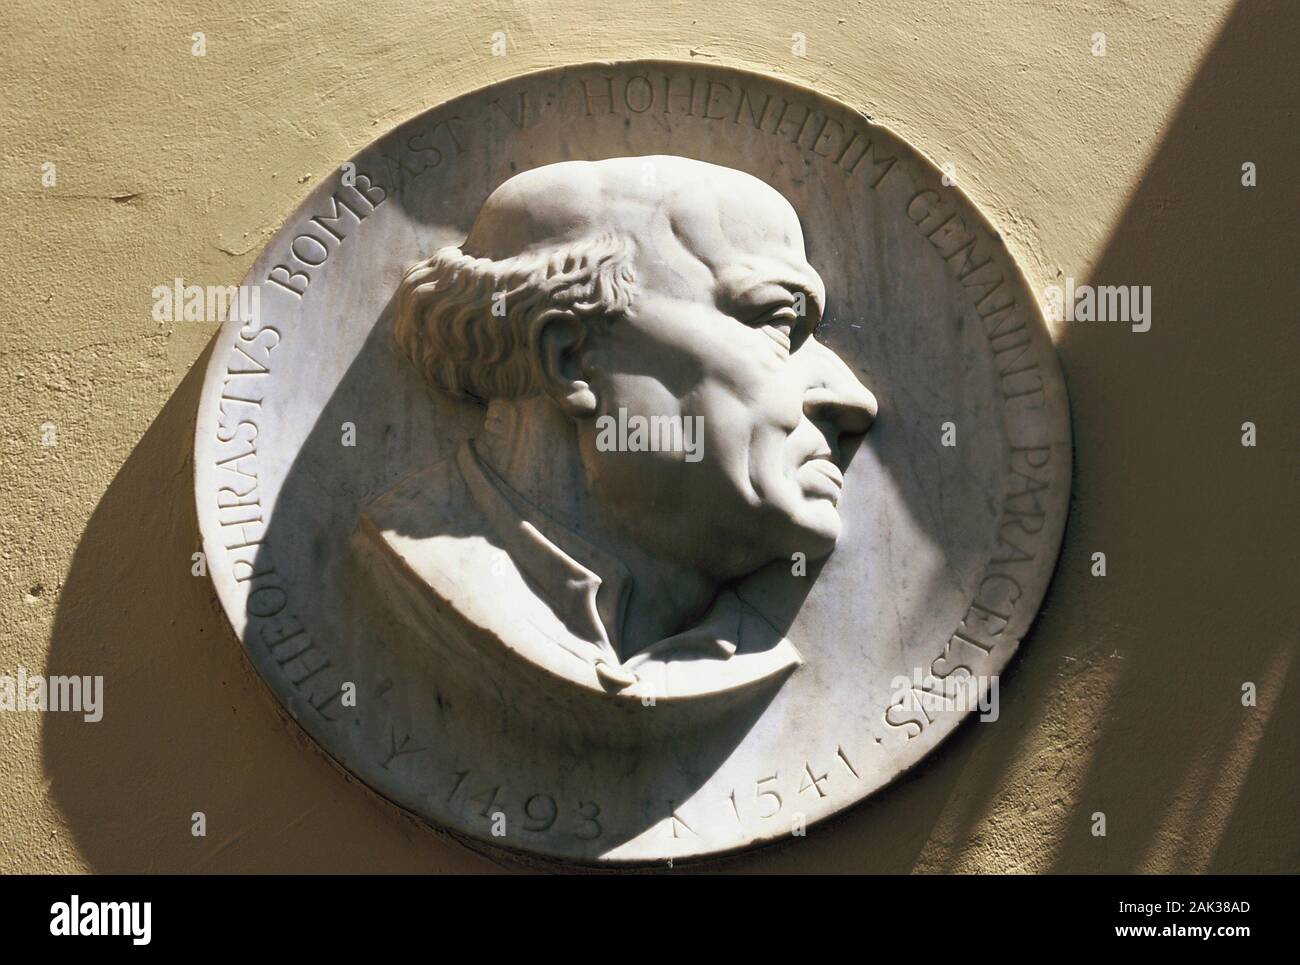 Al Paracelsus-Court a Villach, Austria, Paracelsus-Head si trova su una pietra-medaglione. Paracelso, Philipp Theophrast Aureolus retorica von Foto Stock